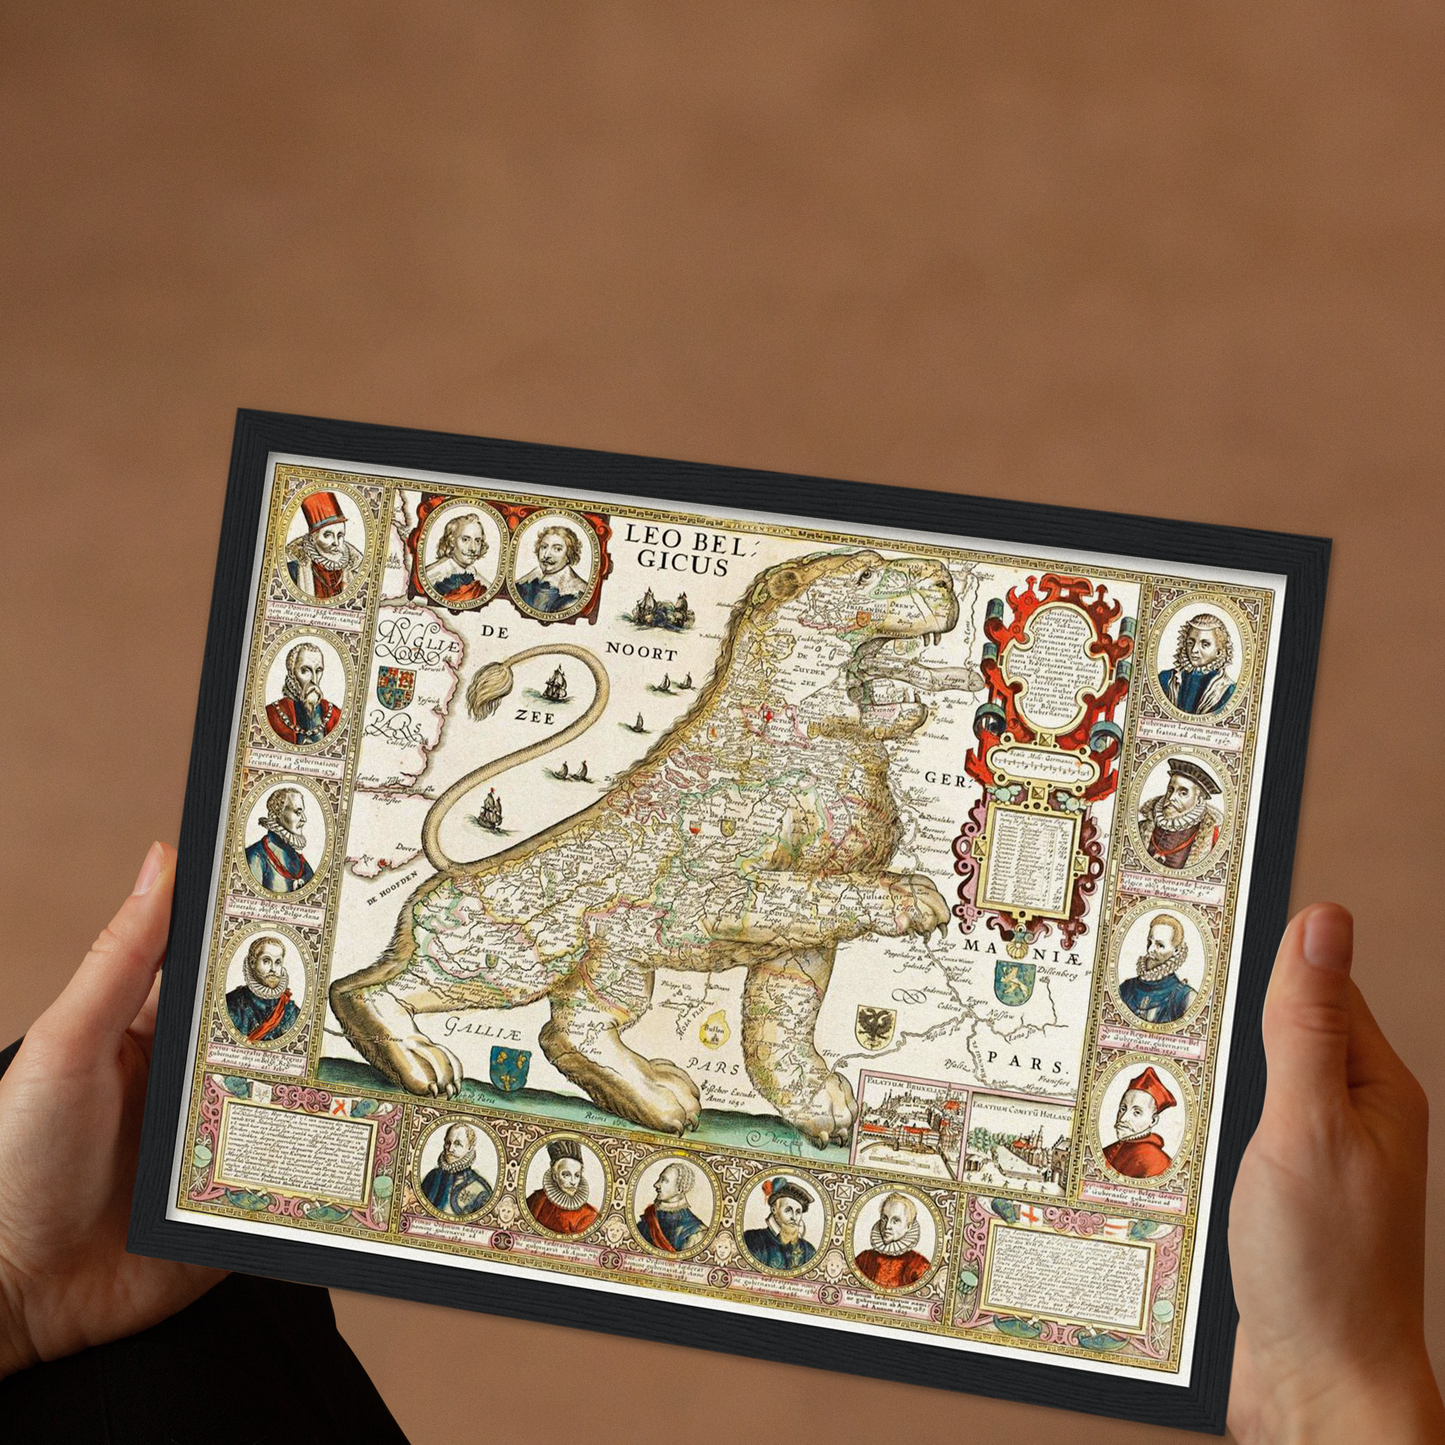 Historische Landkarte Belgien um 1650